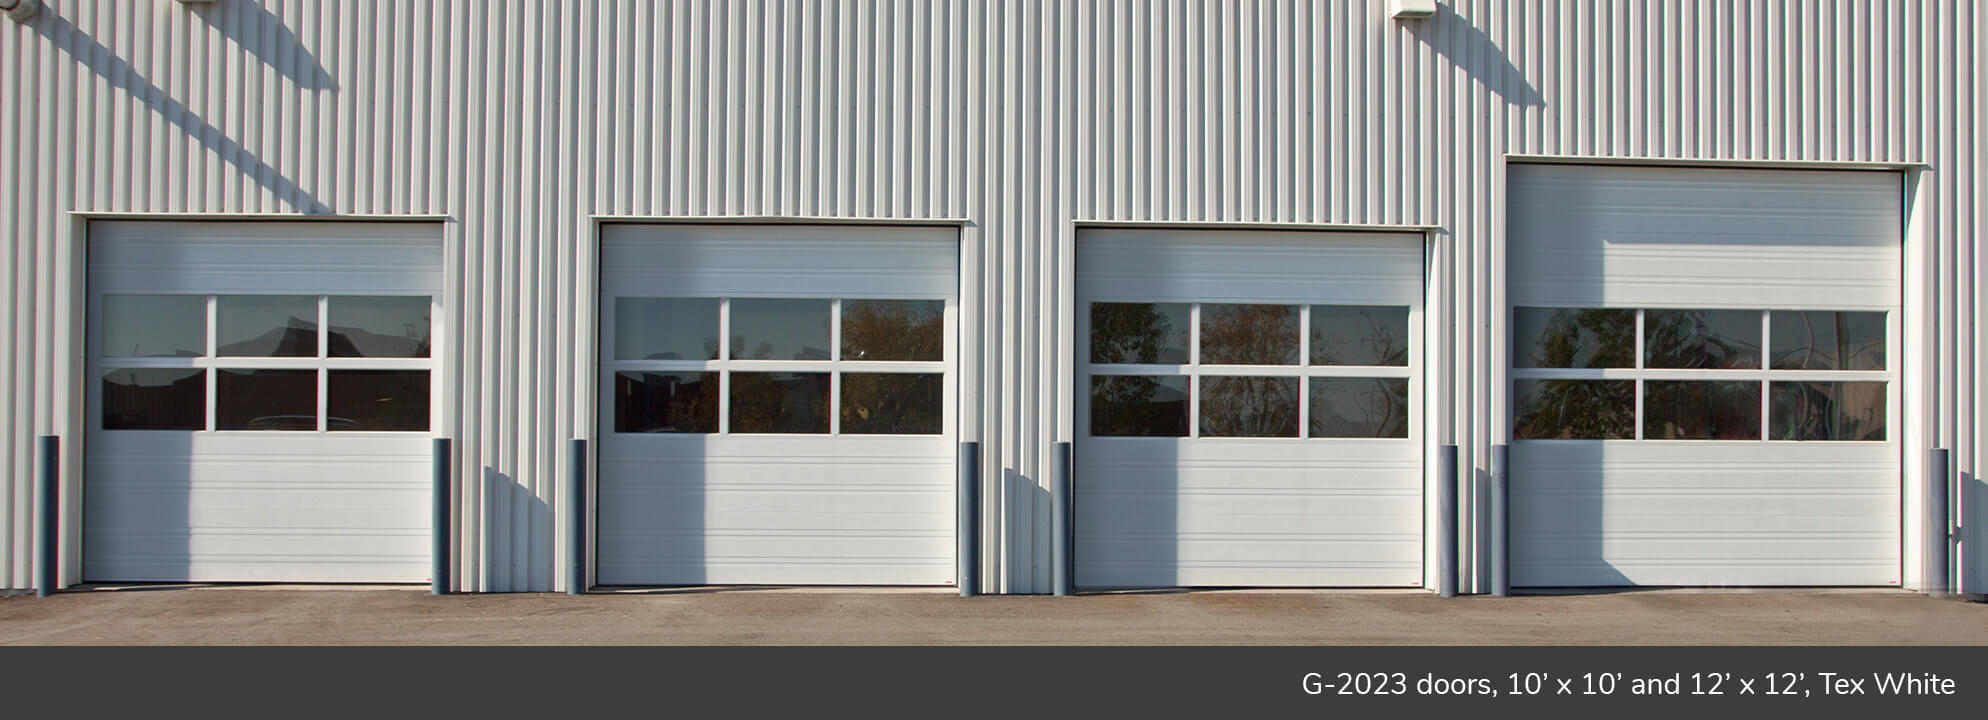 G-2020 doors, 10' x 10' and 12' x 12', Tex White